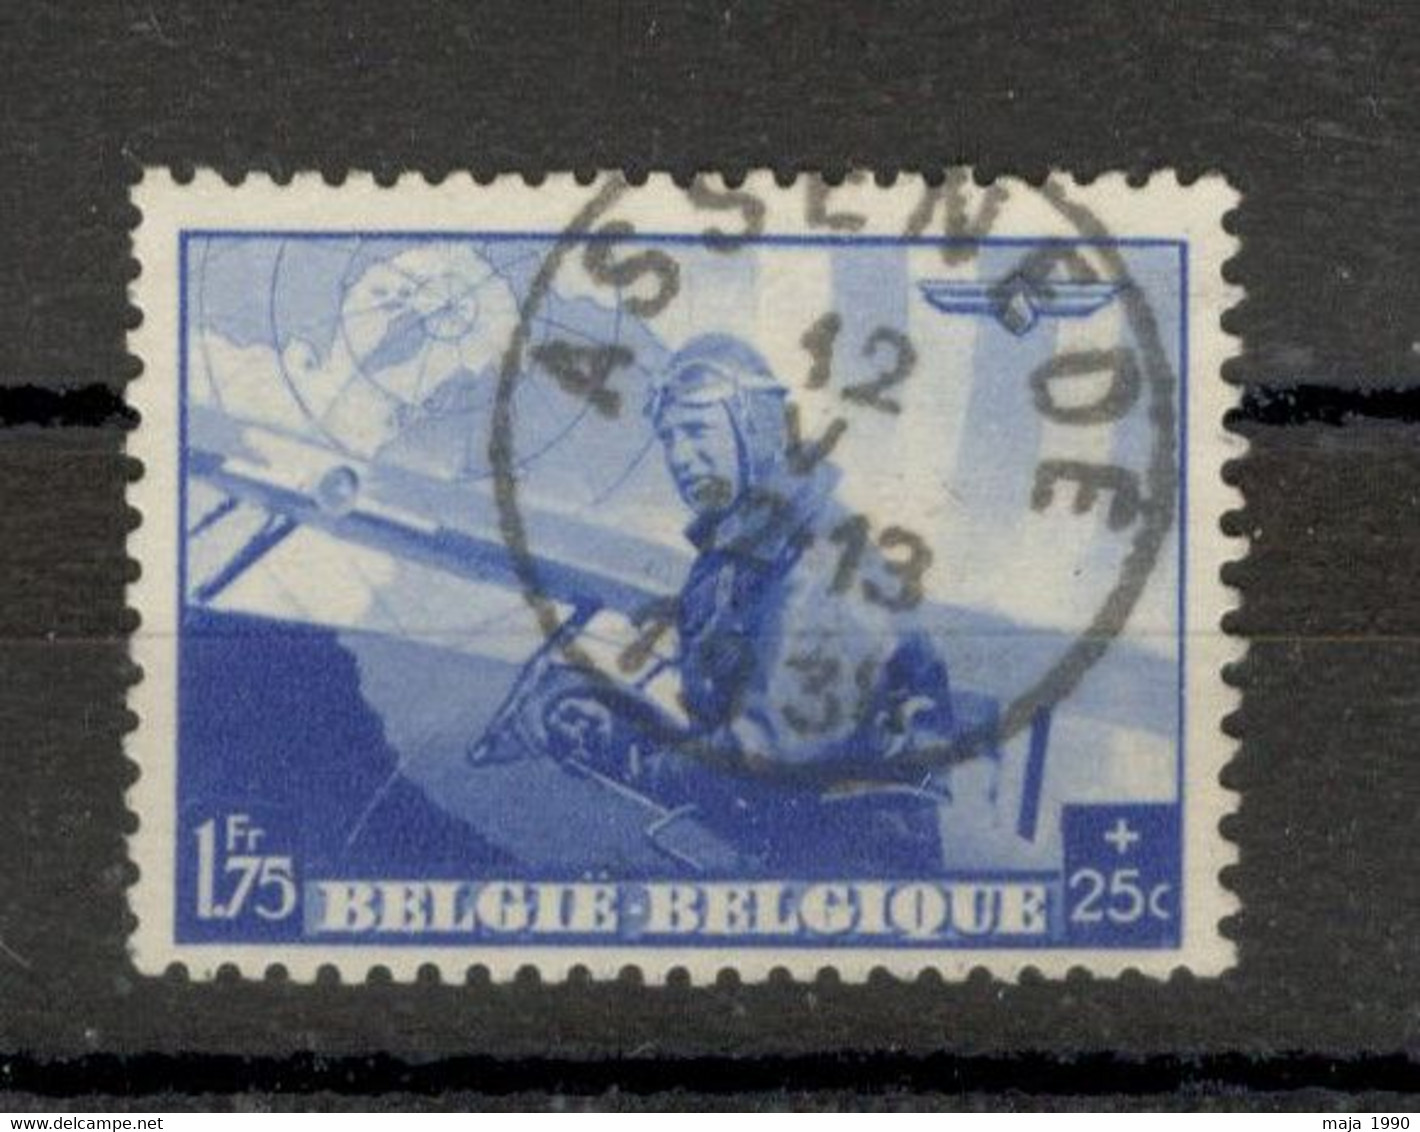 BELGIUM USED AIRMAIL STAMP - Mi.No. 469 - 1938. - 1929-1941 Grand Montenez